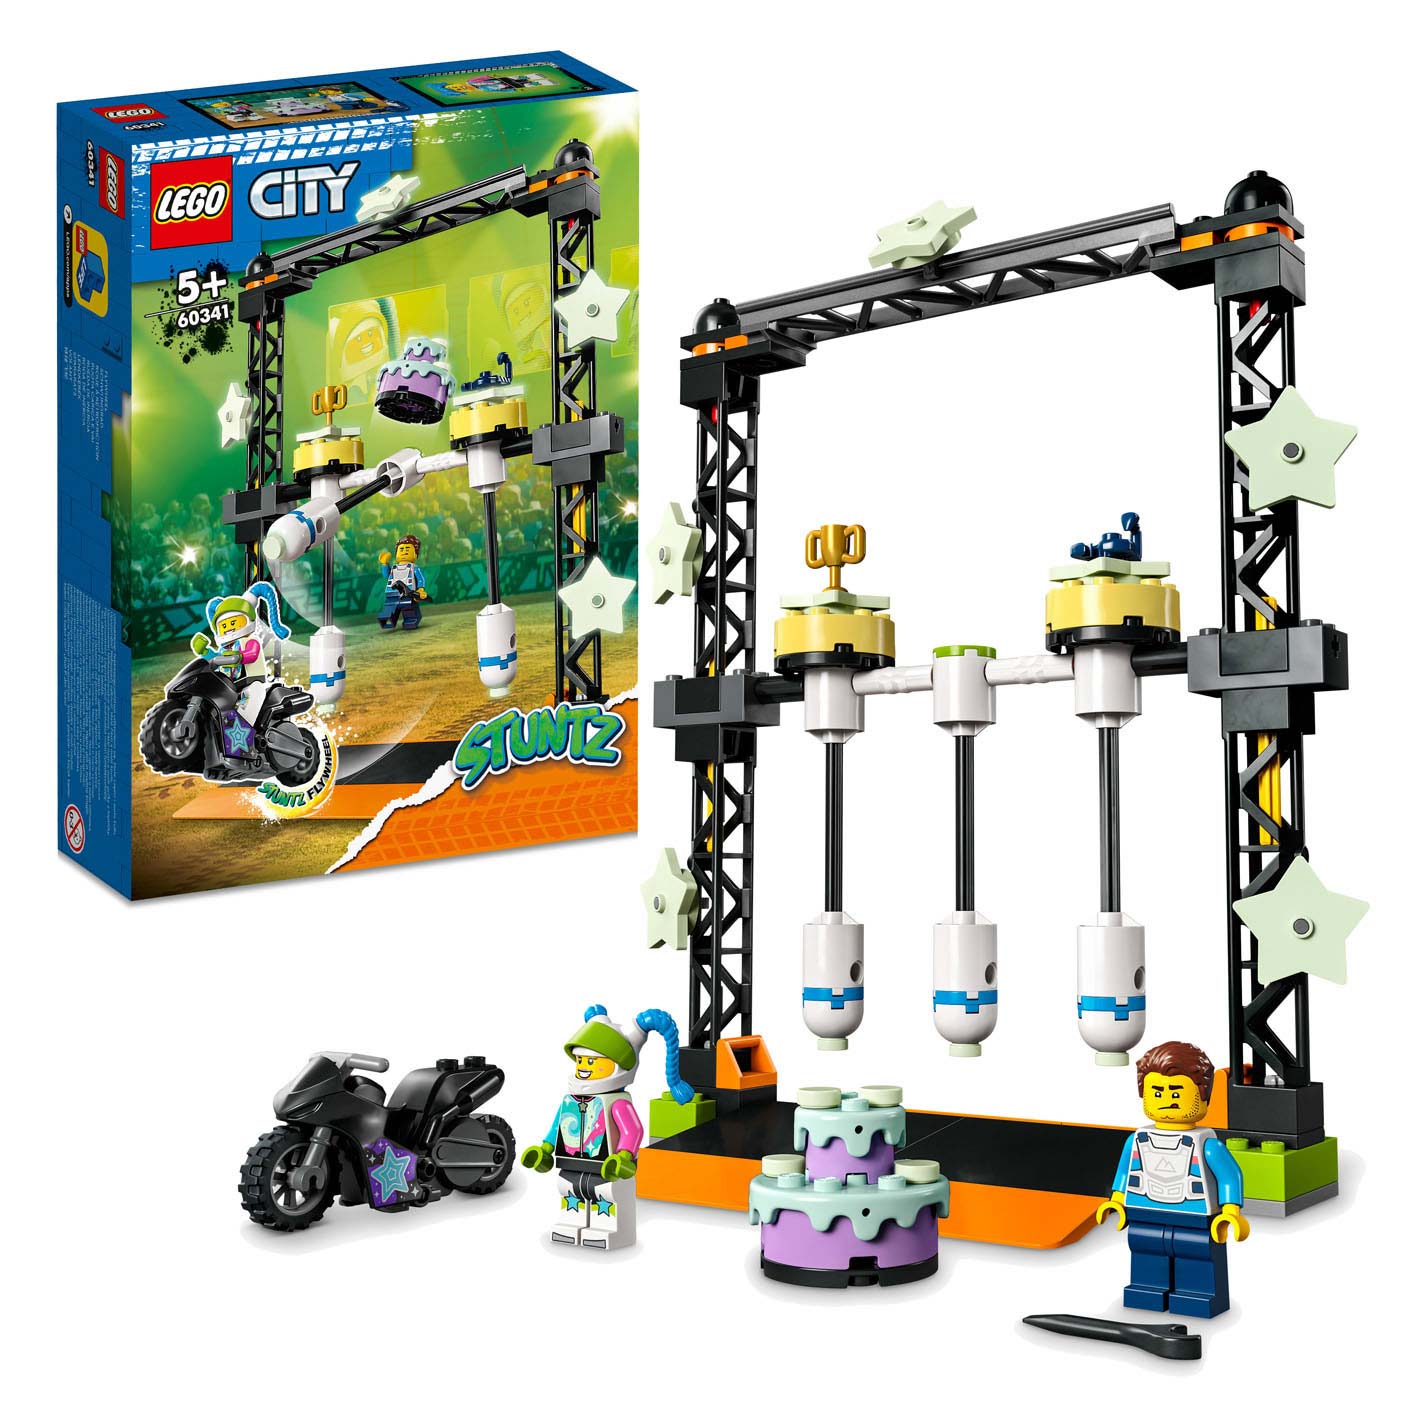 LEGO City 60341 Le défi des cascades renversées